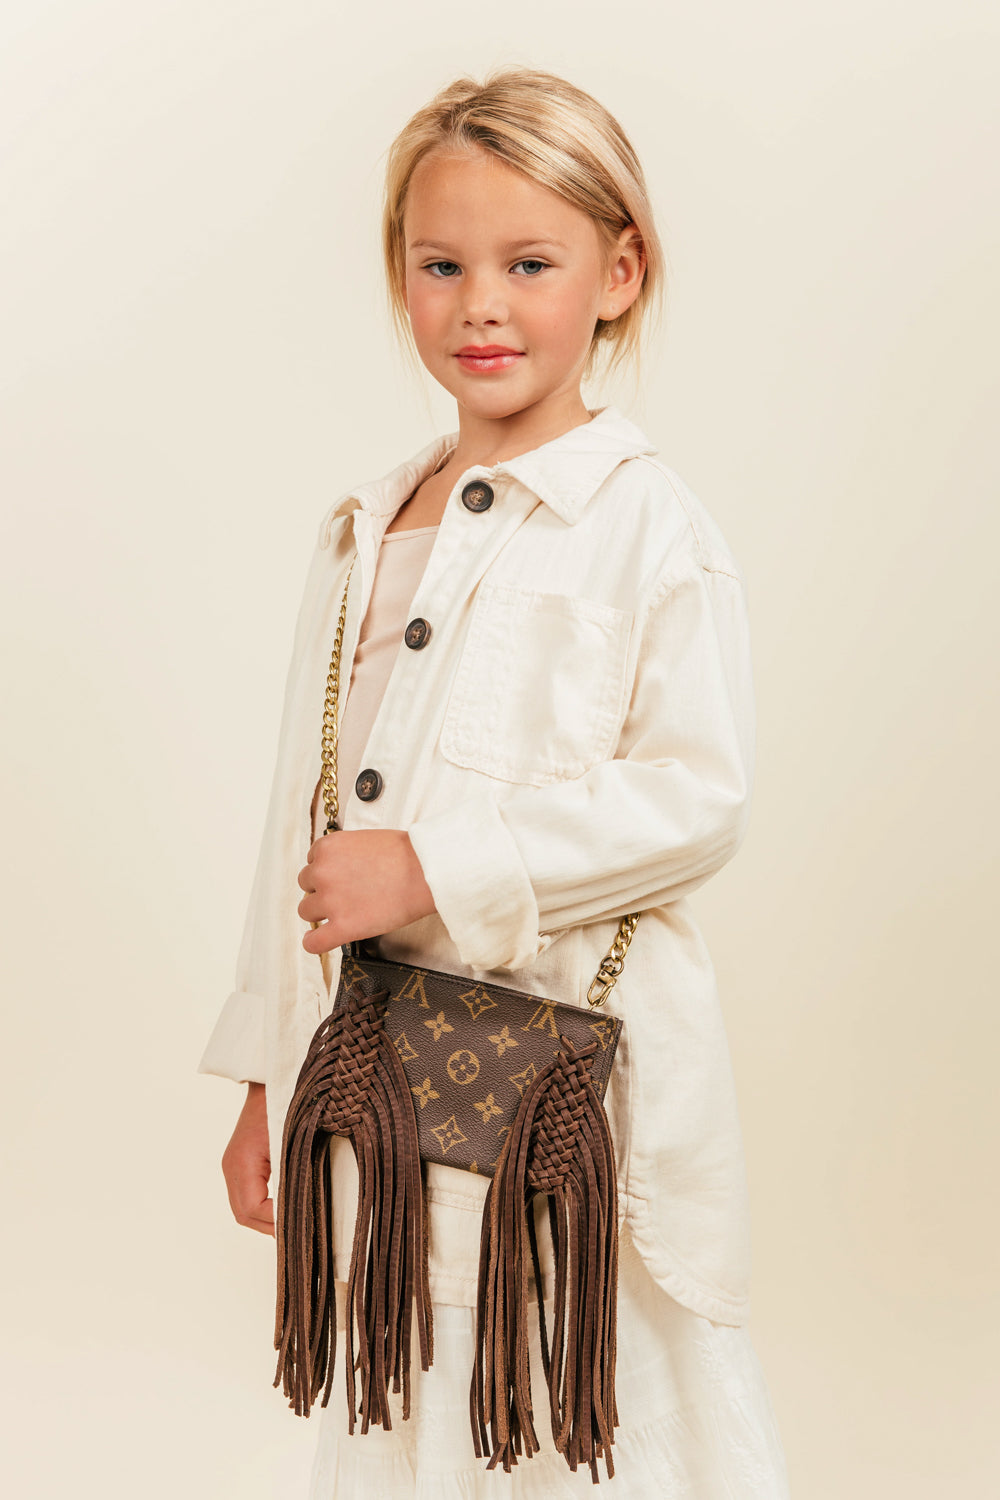 Shop Louis Vuitton Kids Items